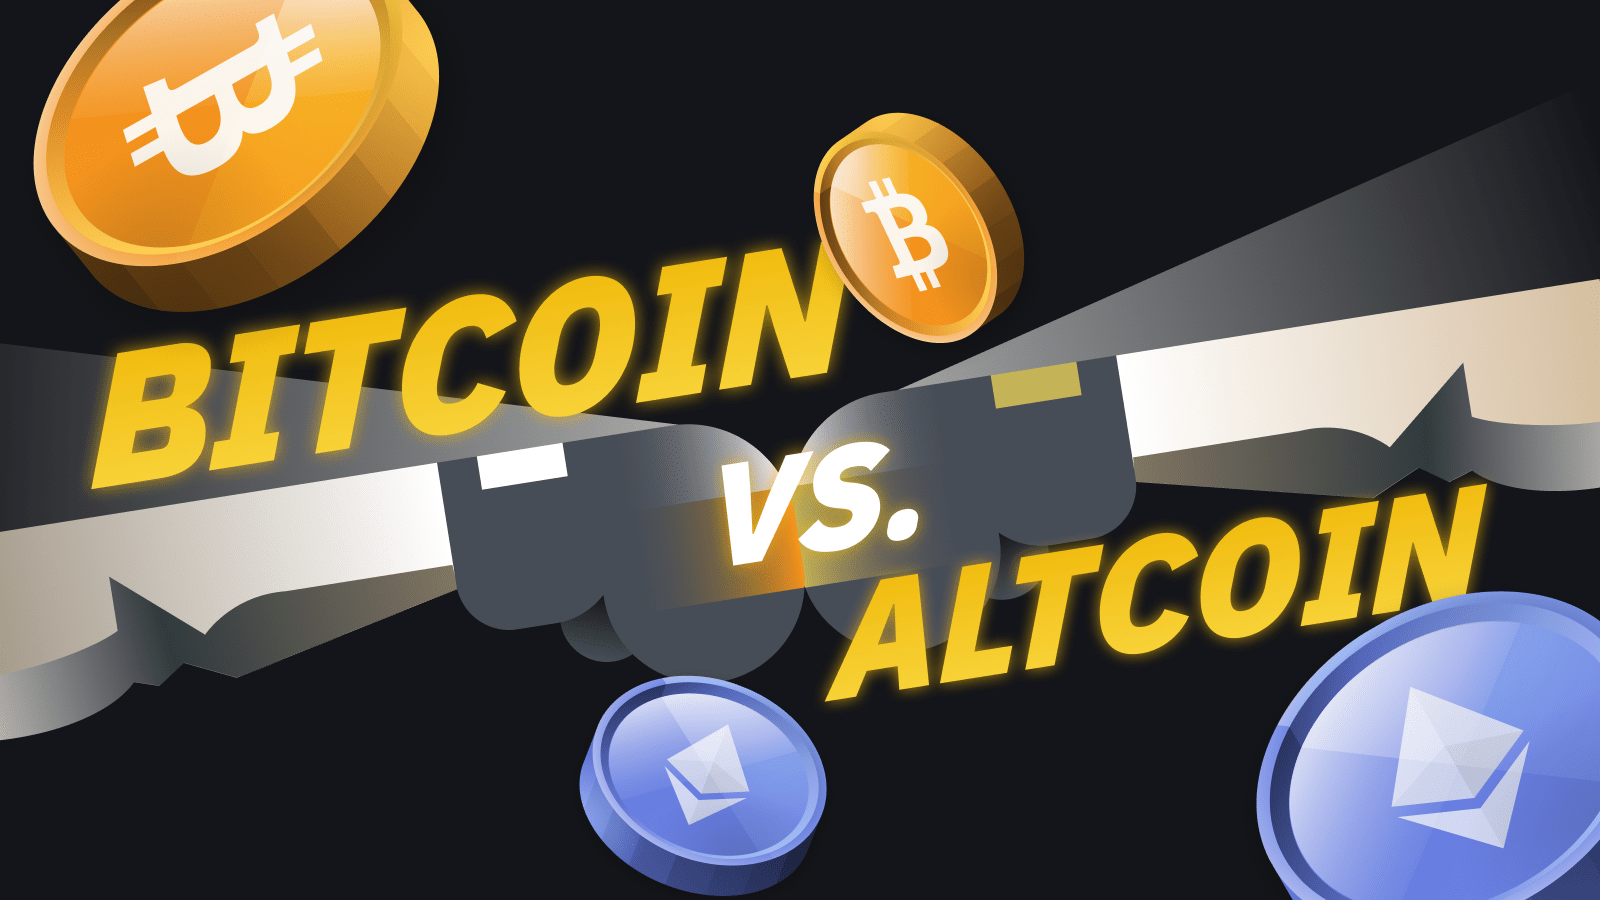 Bitcoin vs altcoins